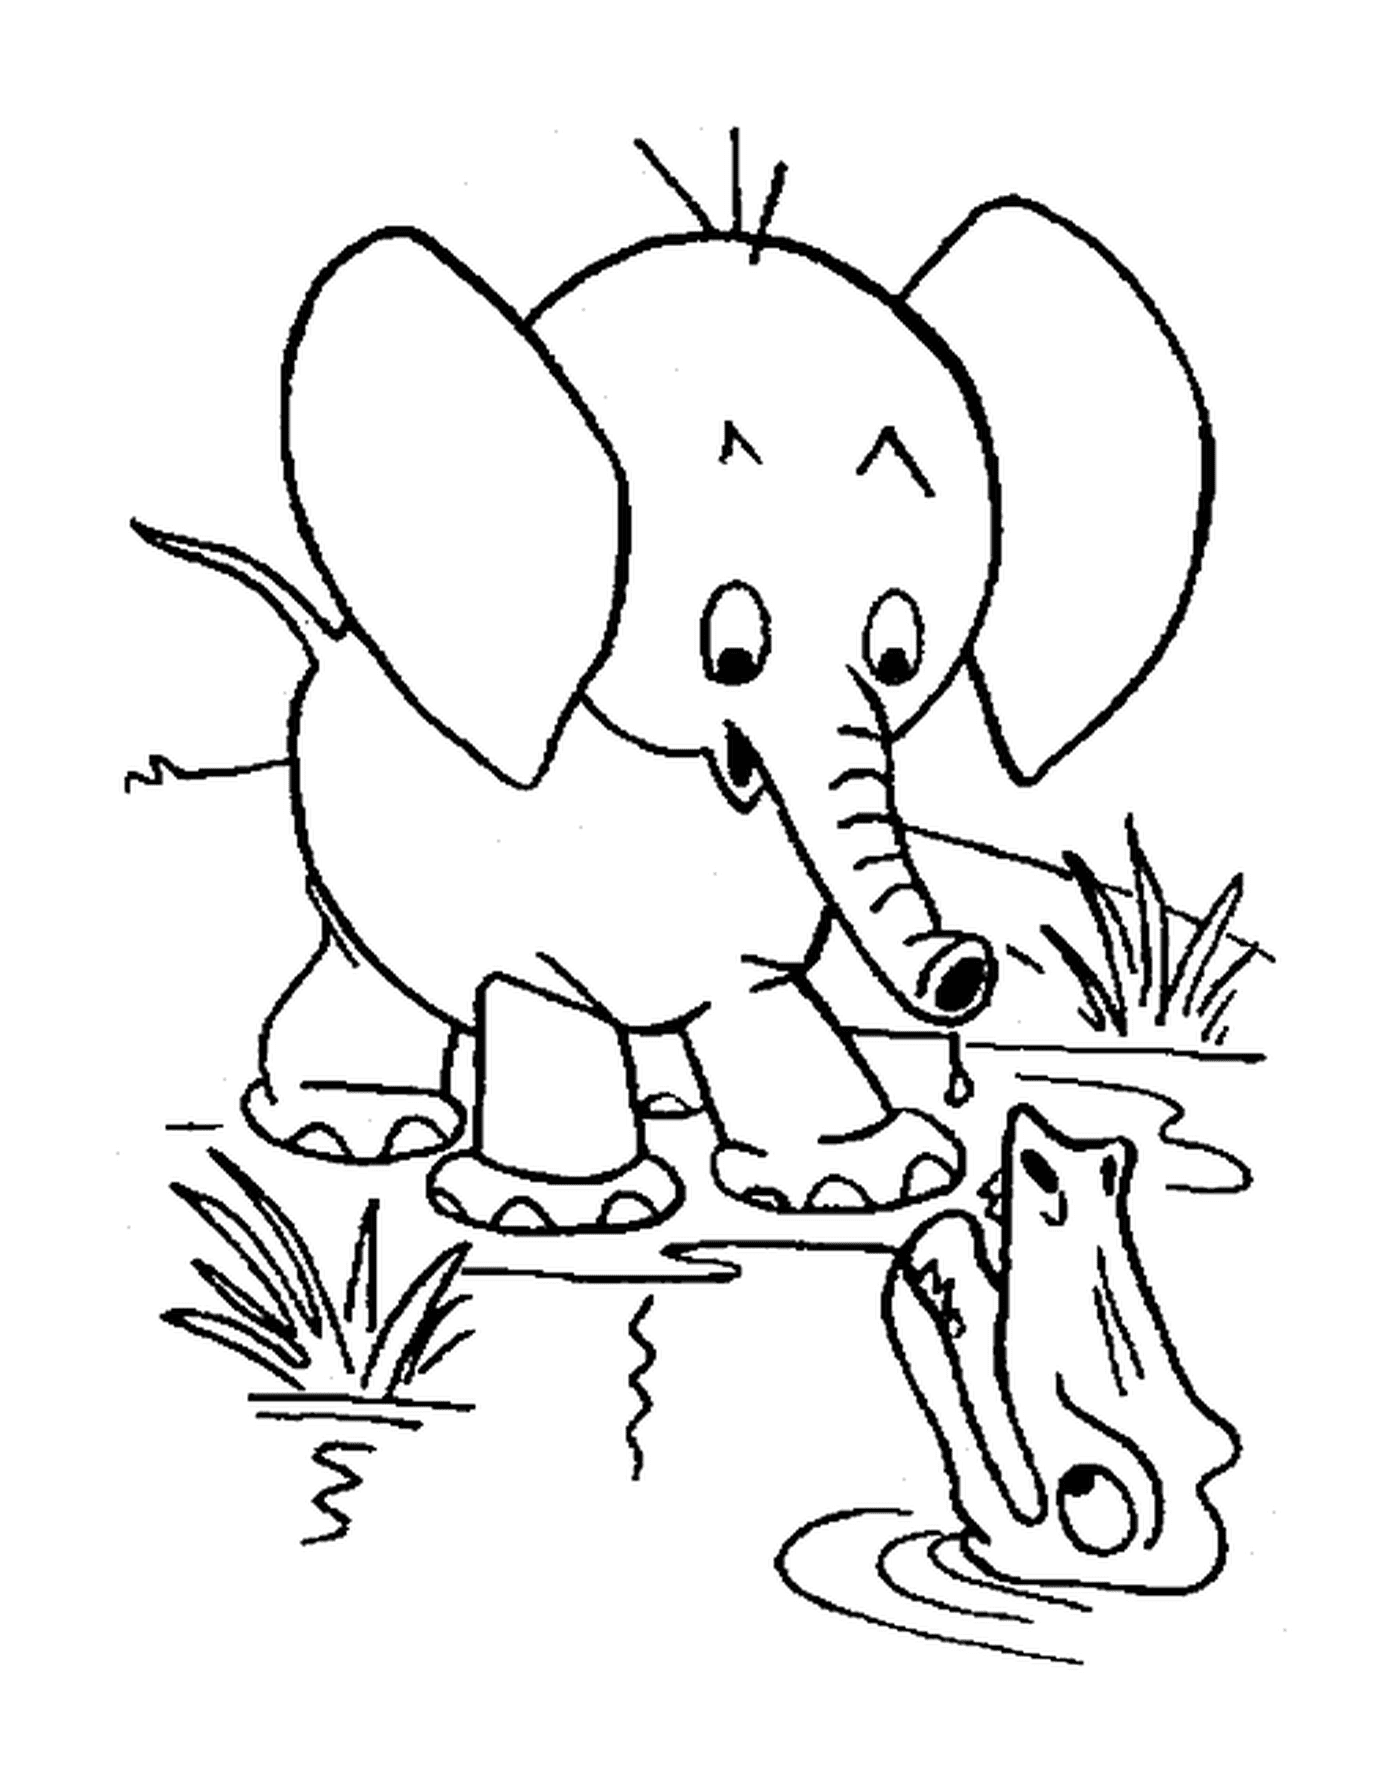  一只大象和鳄鱼站在水边 